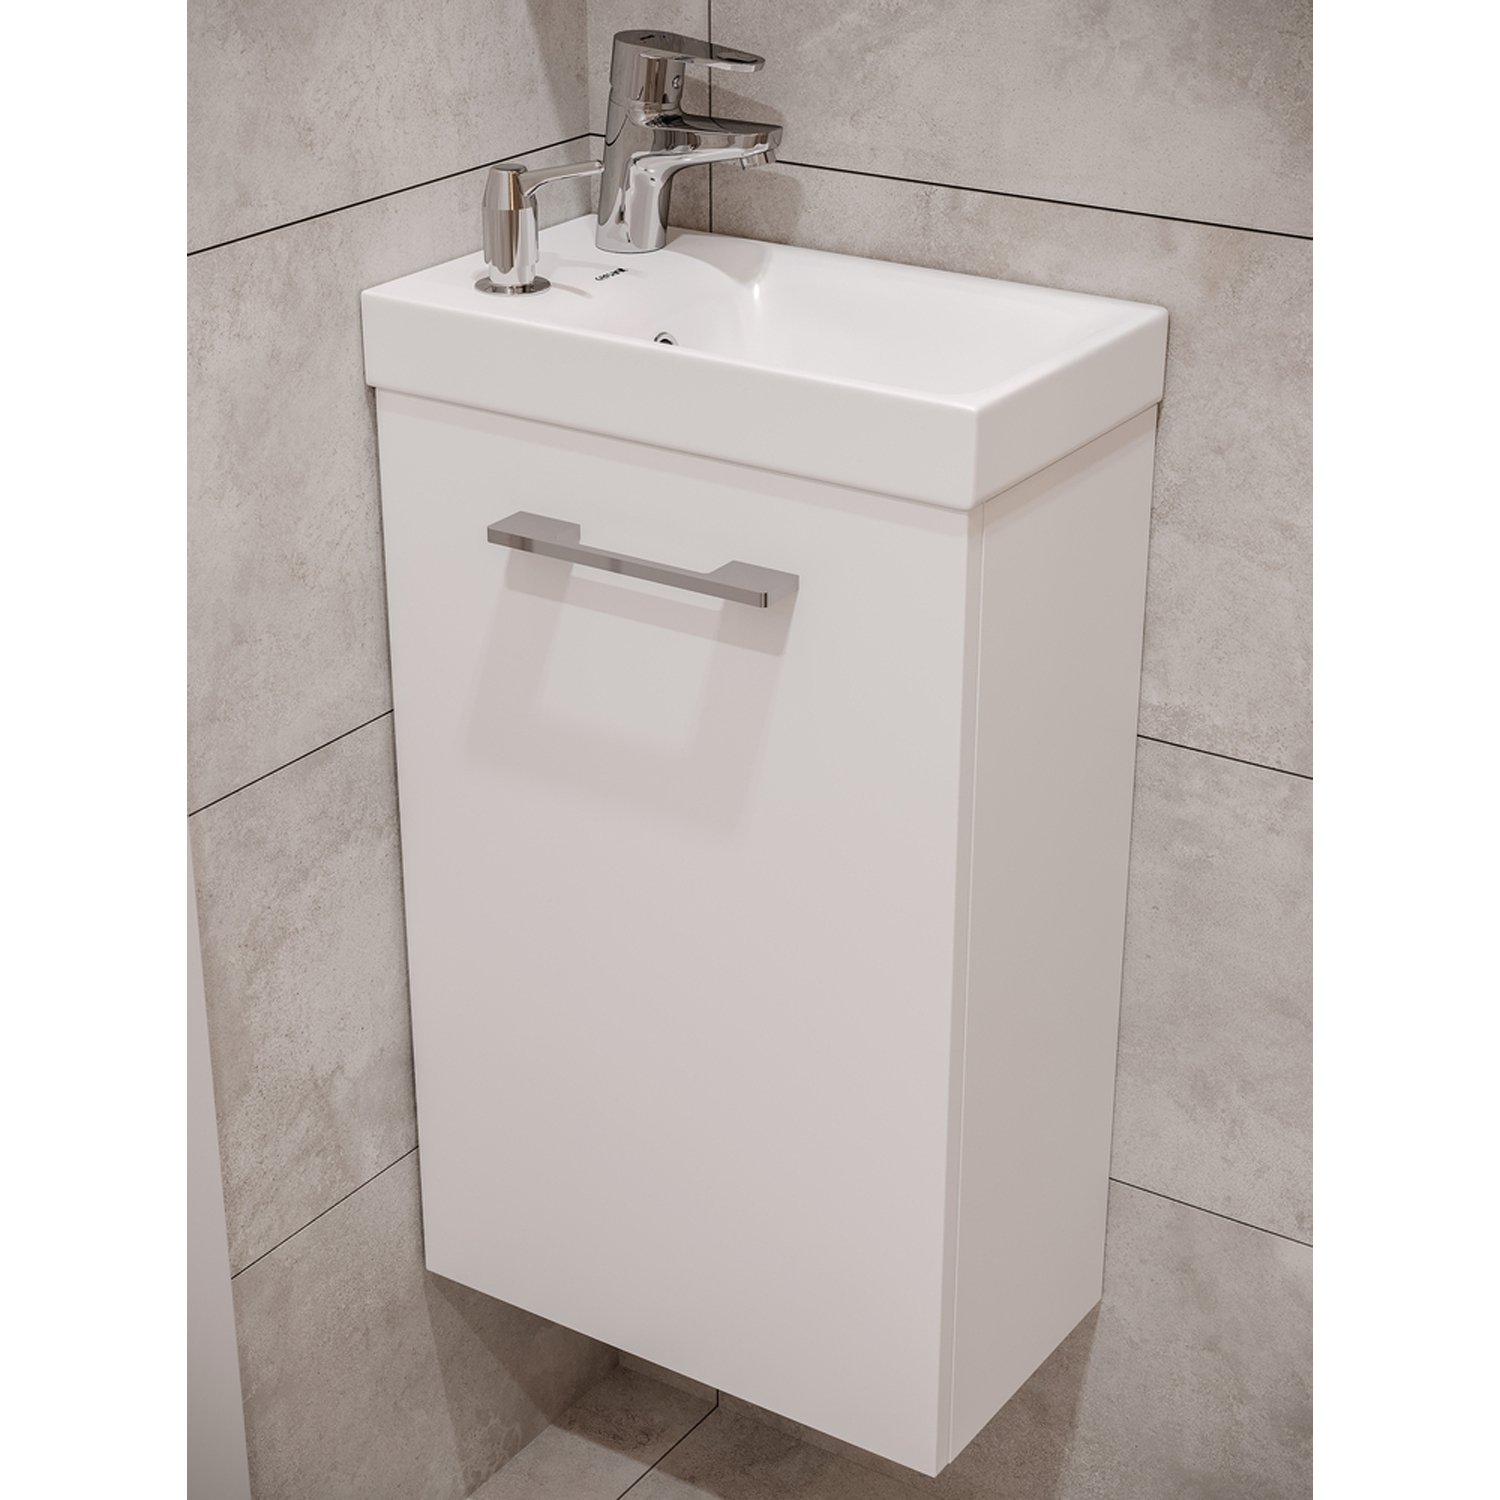 Мебель для ванной Cersanit Lara 40, с раковиной, смесителем и дозатором для мыла, цвет белый - фото 1